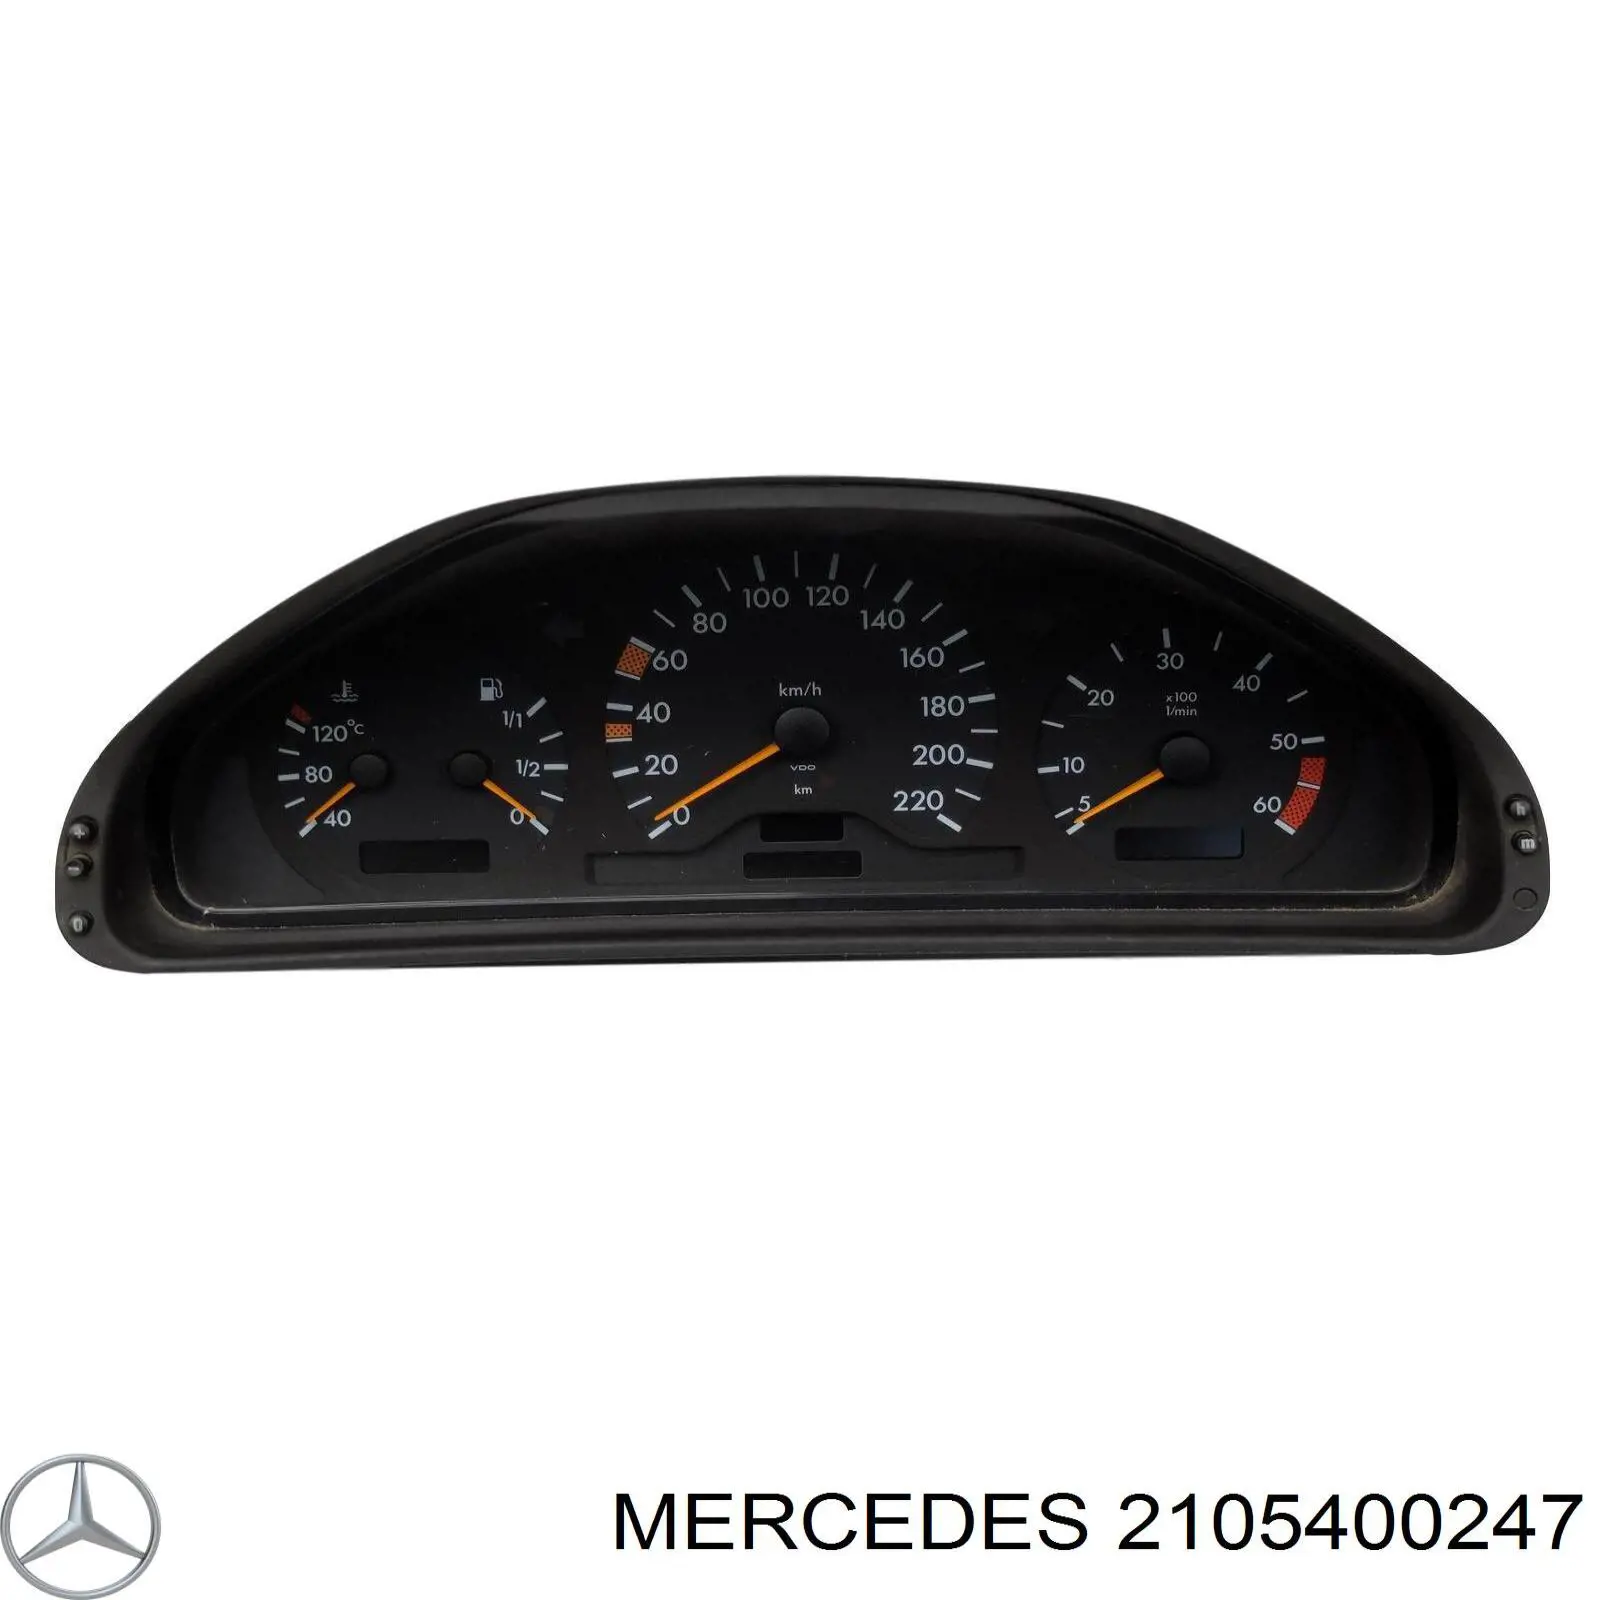 A2105406947 Mercedes painel de instrumentos (quadro de instrumentos)